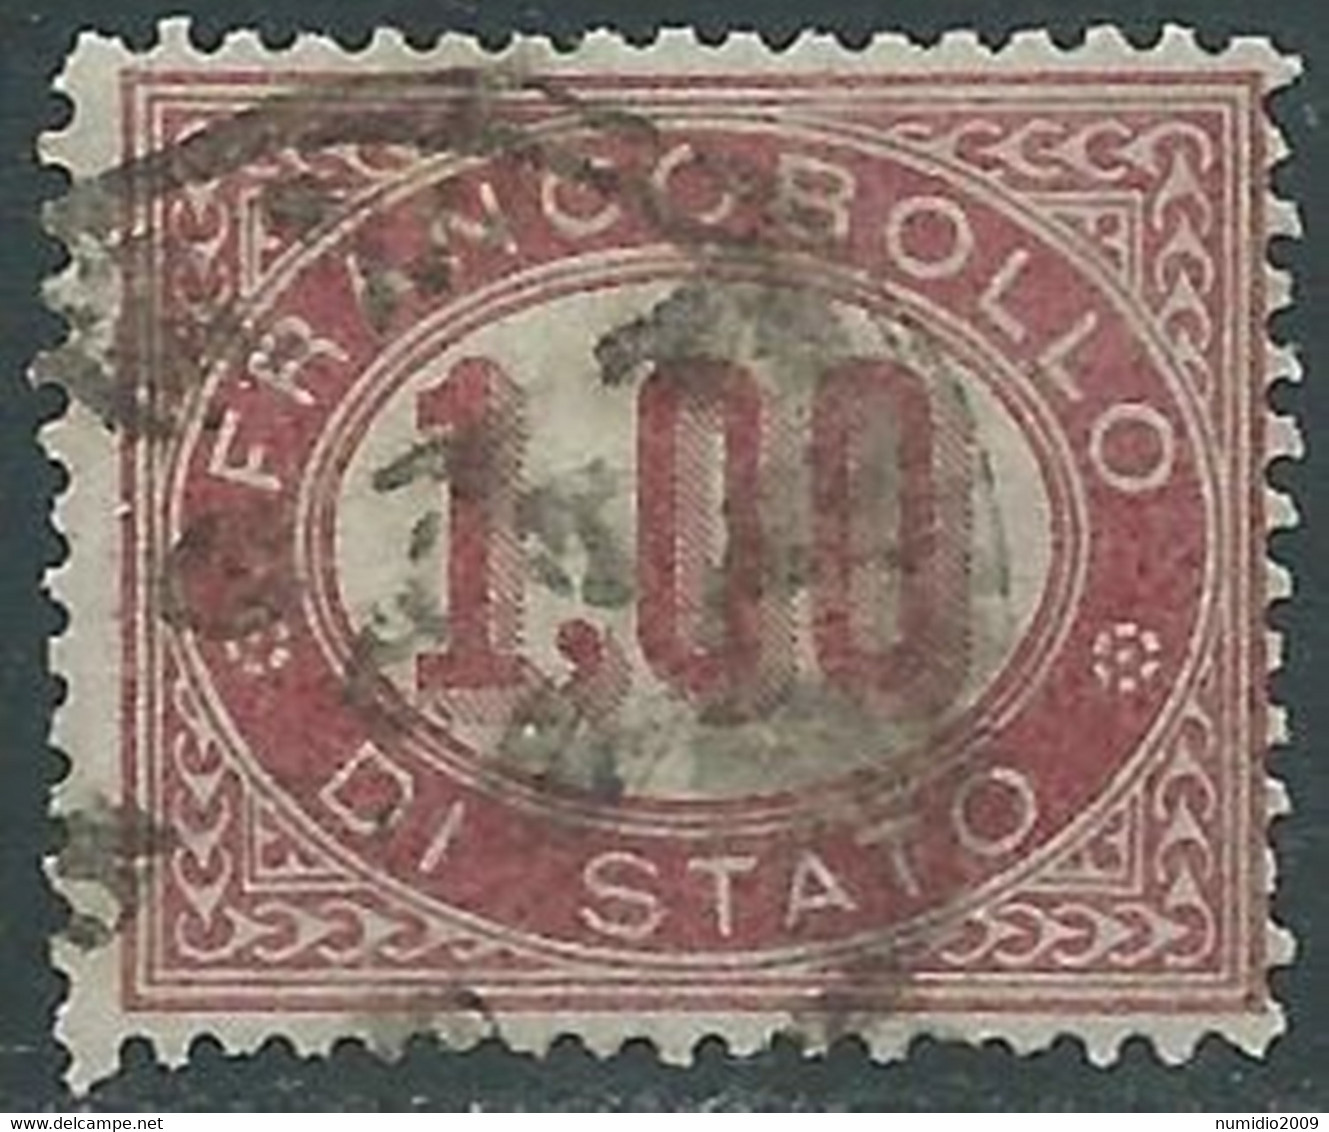 1875 REGNO SERVIZIO DI STATO USATO 1 LIRA - RE30-7 - Officials